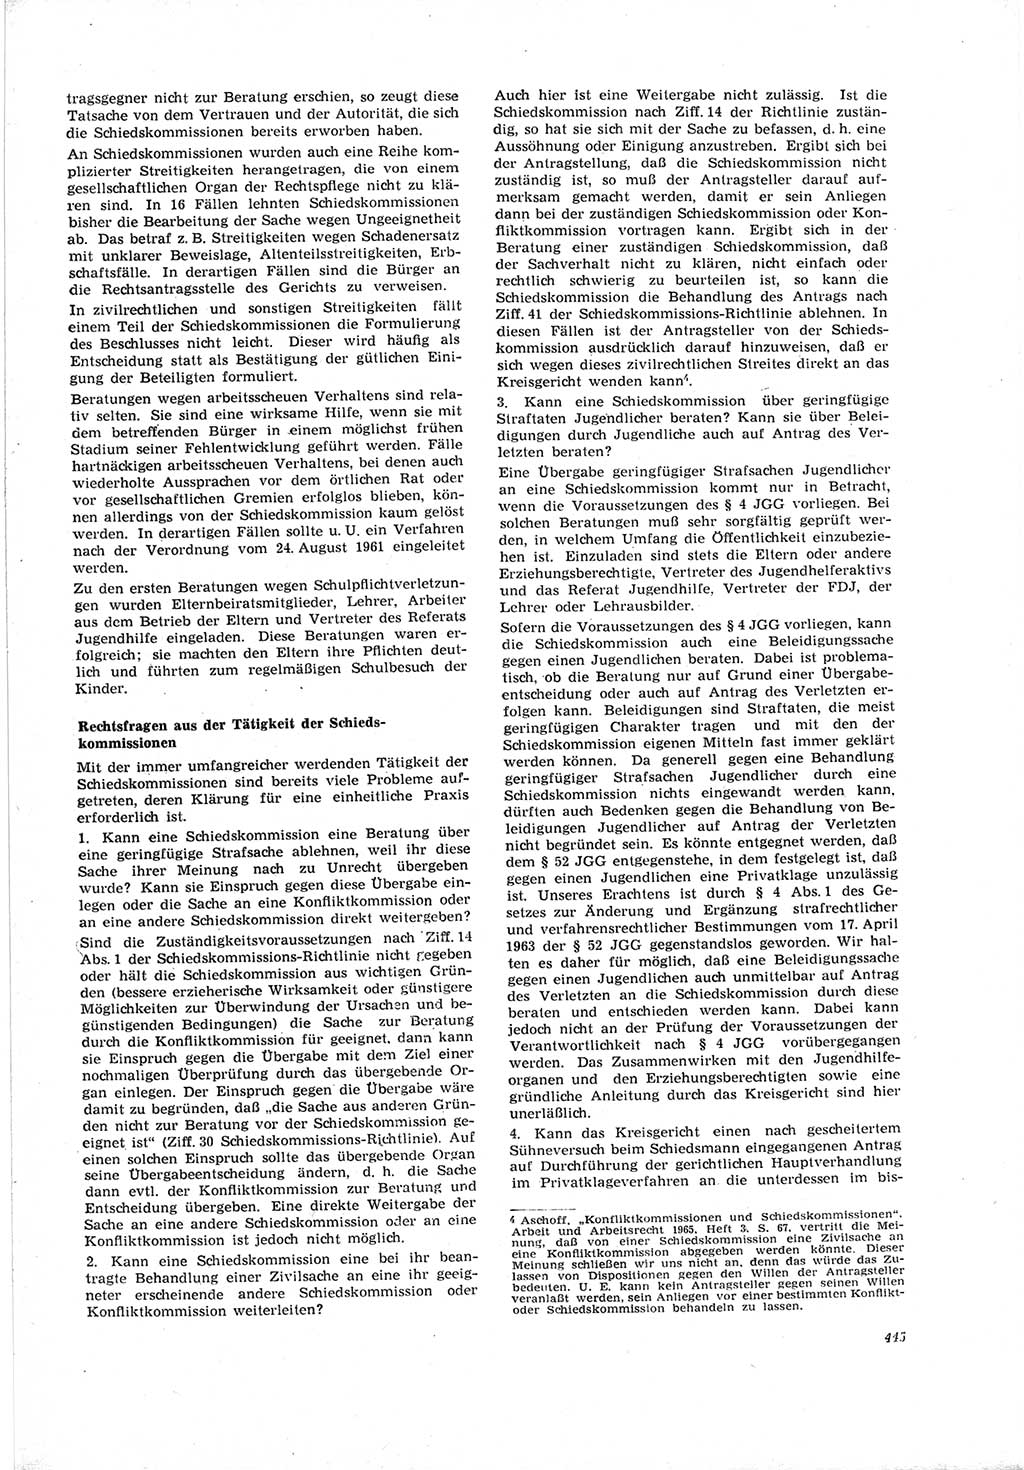 Neue Justiz (NJ), Zeitschrift für Recht und Rechtswissenschaft [Deutsche Demokratische Republik (DDR)], 19. Jahrgang 1965, Seite 445 (NJ DDR 1965, S. 445)